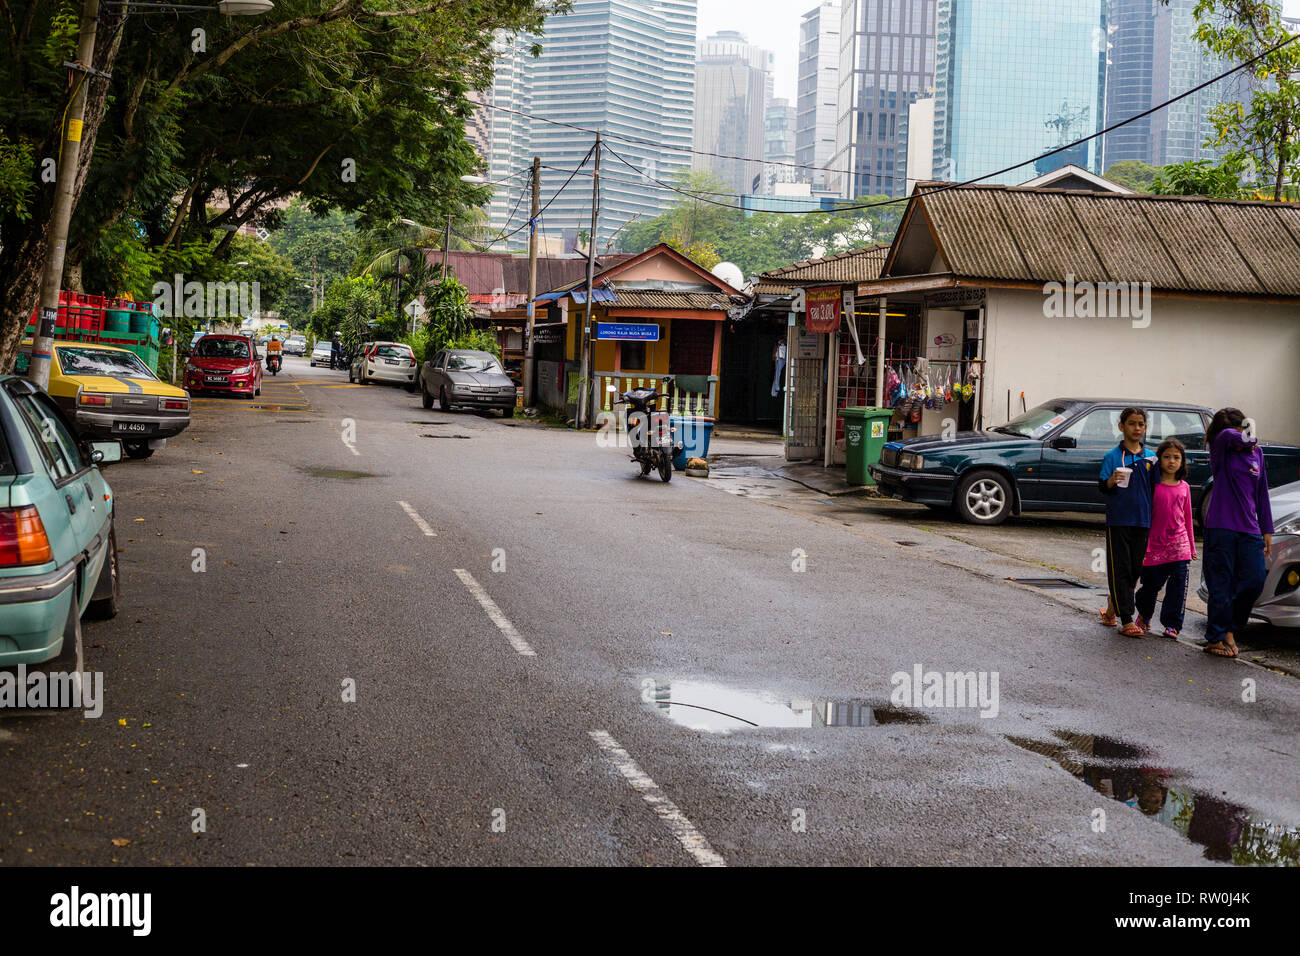 Kampung Baru, scène de rue à Enclave malaisienne traditionnelle, Kuala Lumpur, Malaisie. Banque D'Images